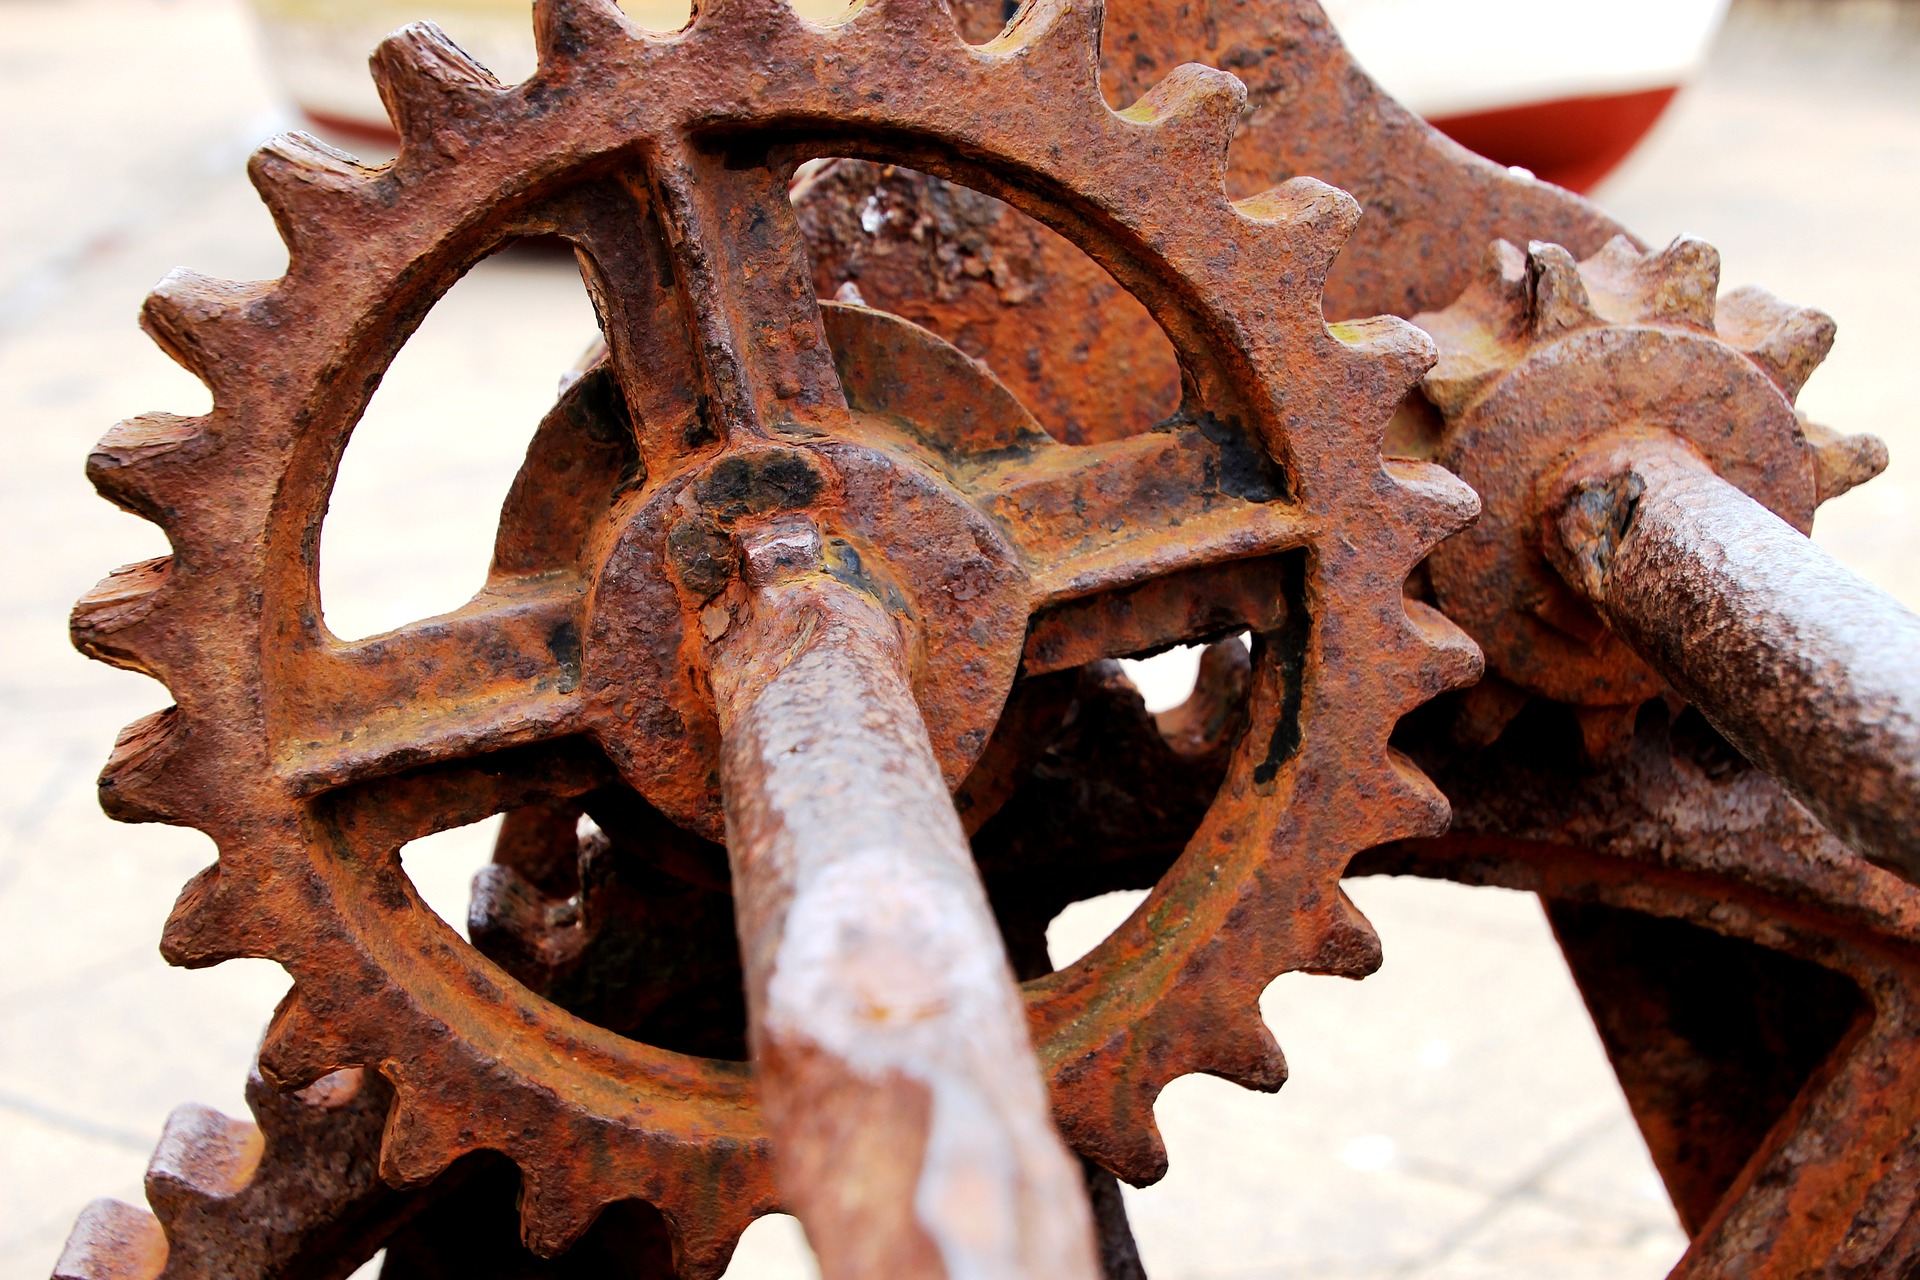 Rusty gears that won't work